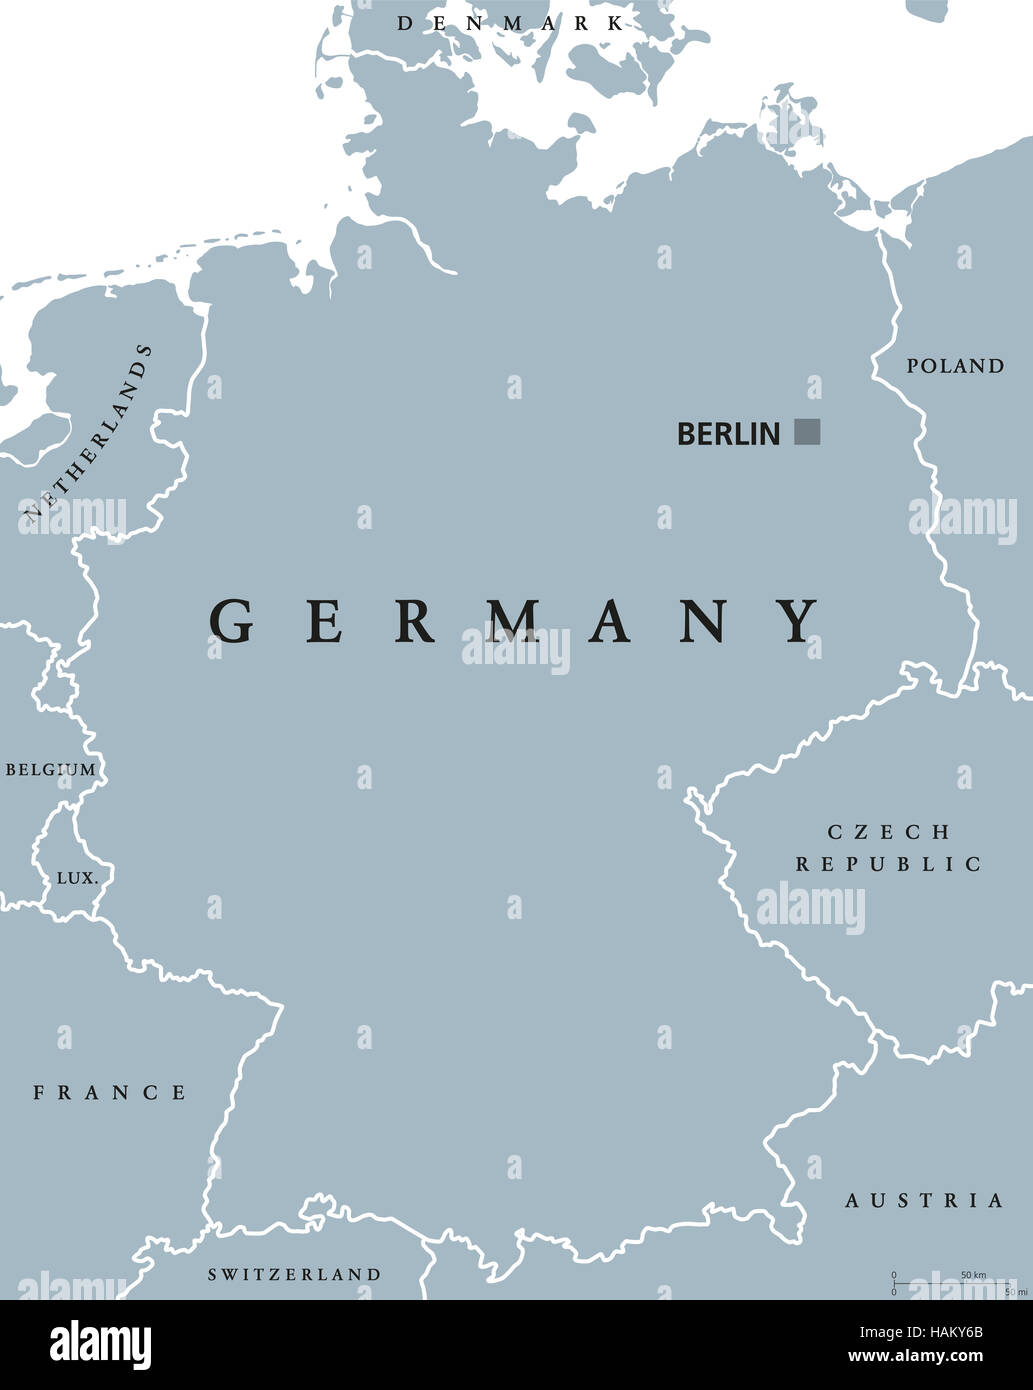 Politische Karte mit Hauptstadt Berlin, nationale Grenzen und Nachbarländern. Graue Abbildung mit englischer Beschriftung. Stockfoto